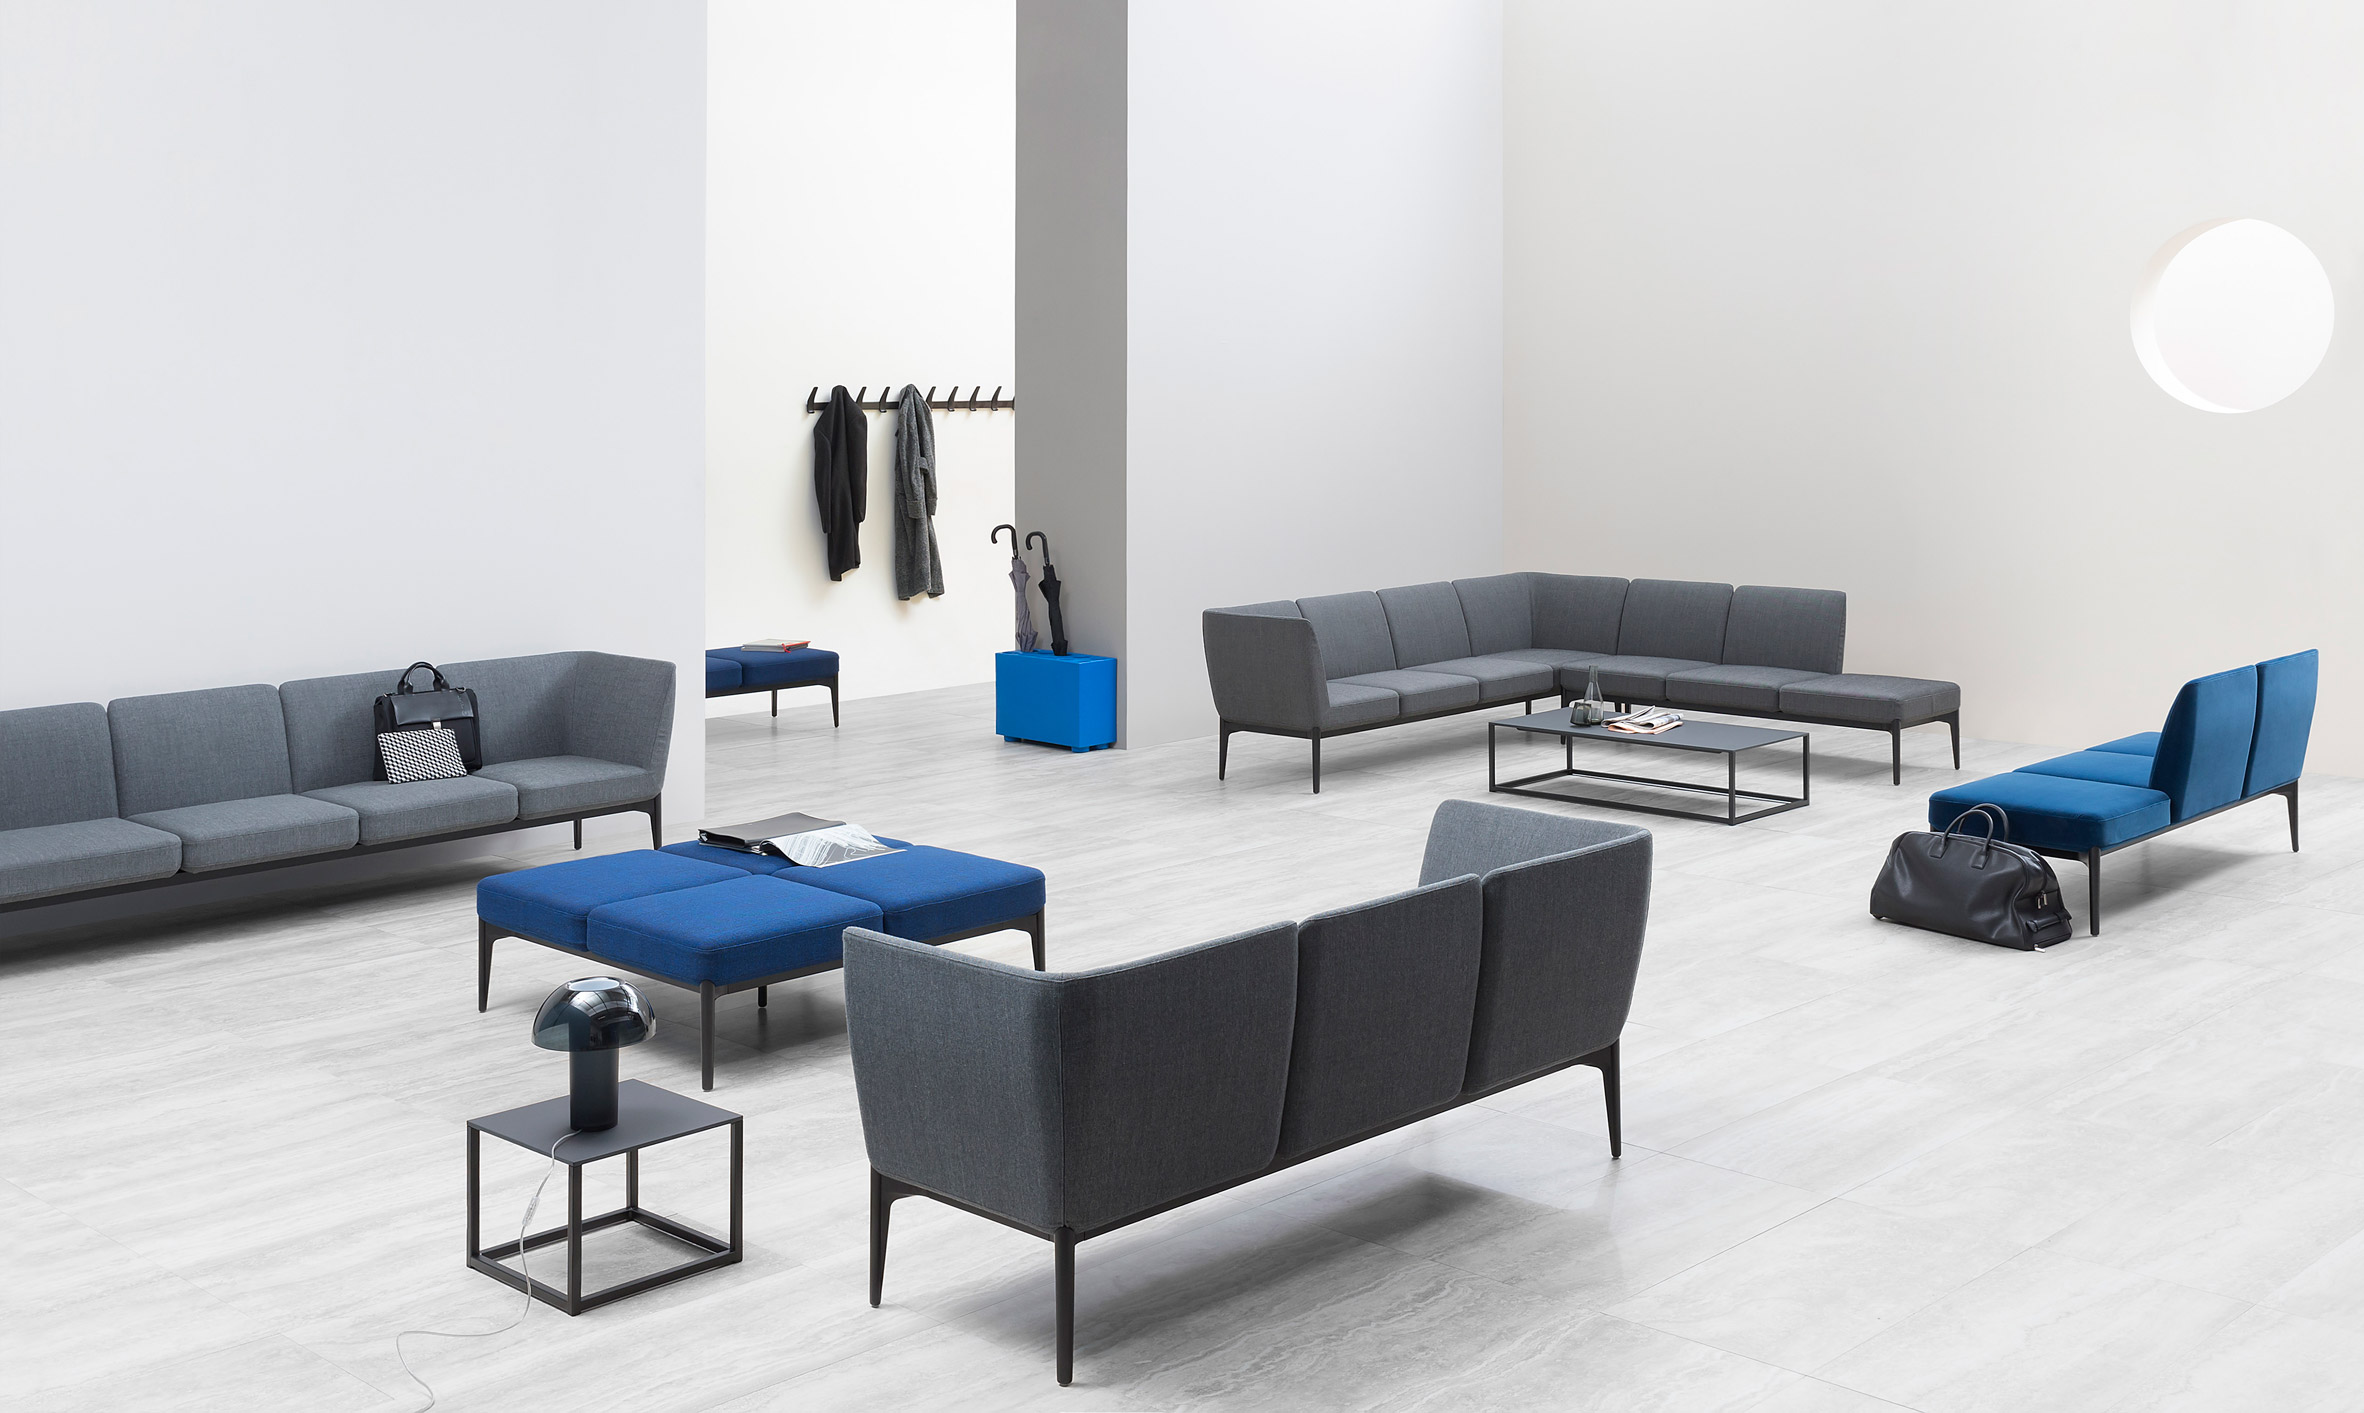 Pedrali office furniture at Orgatec 2016